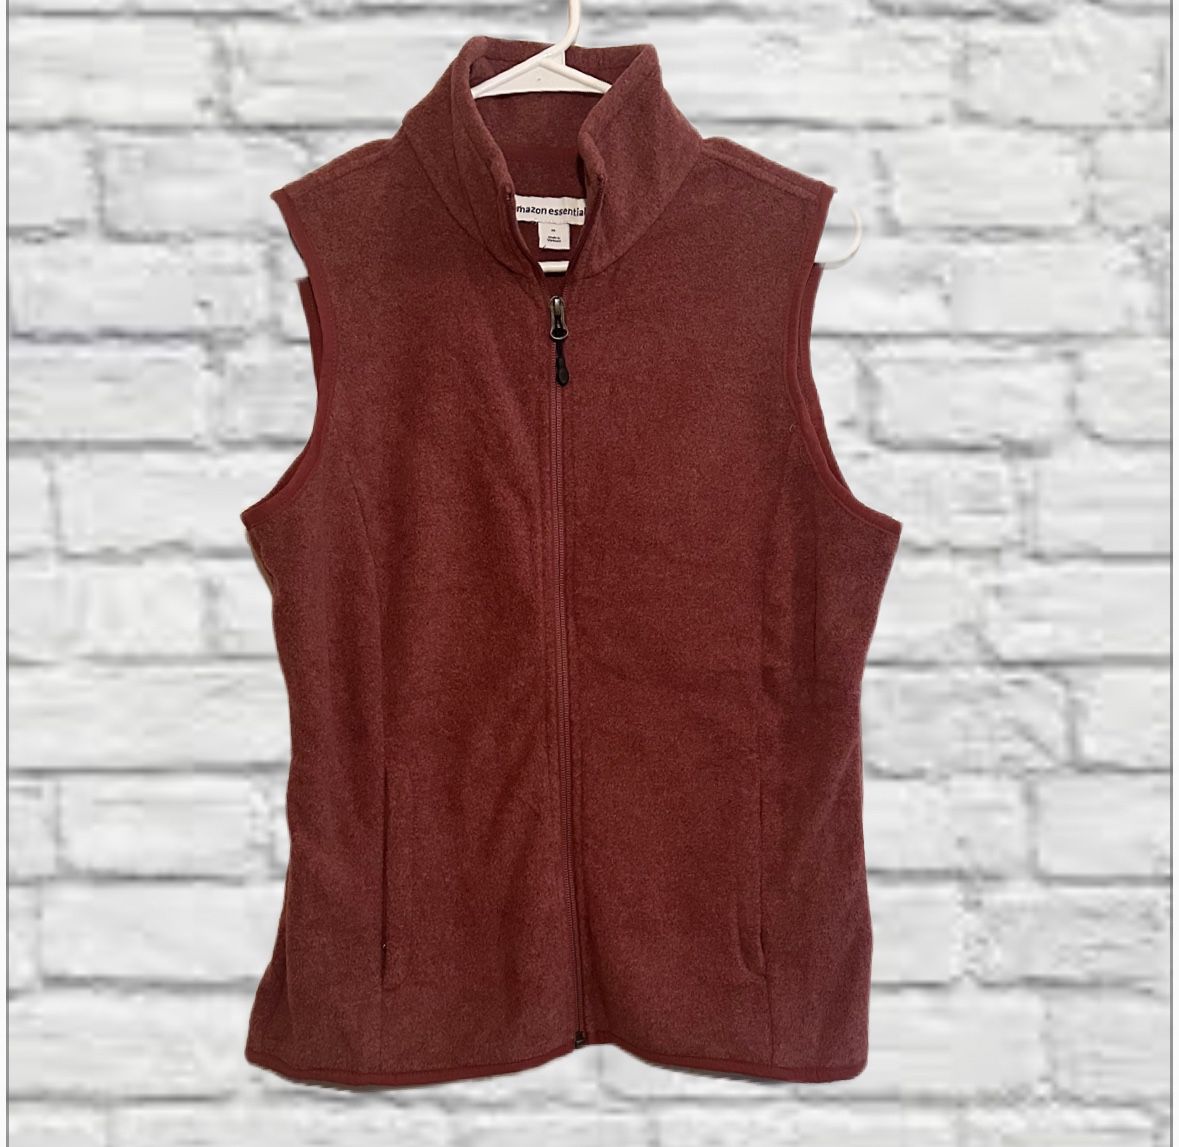 Amazon Essentials Fleece Vest Size Medium NWT Ladies Dark Mauve